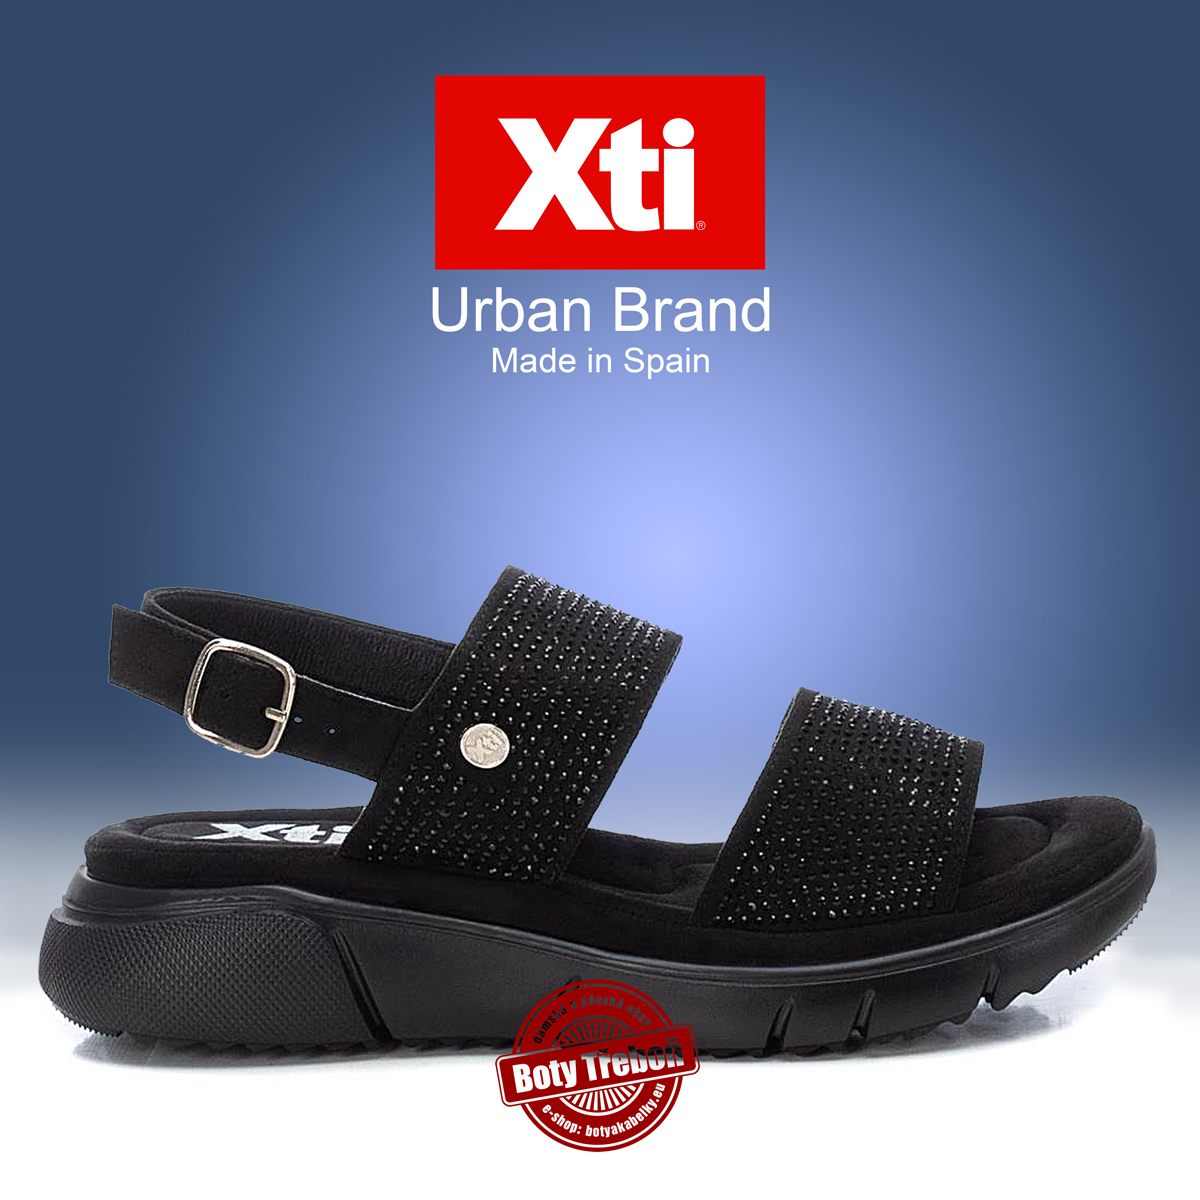 XTI - dámské sandály, černé 02